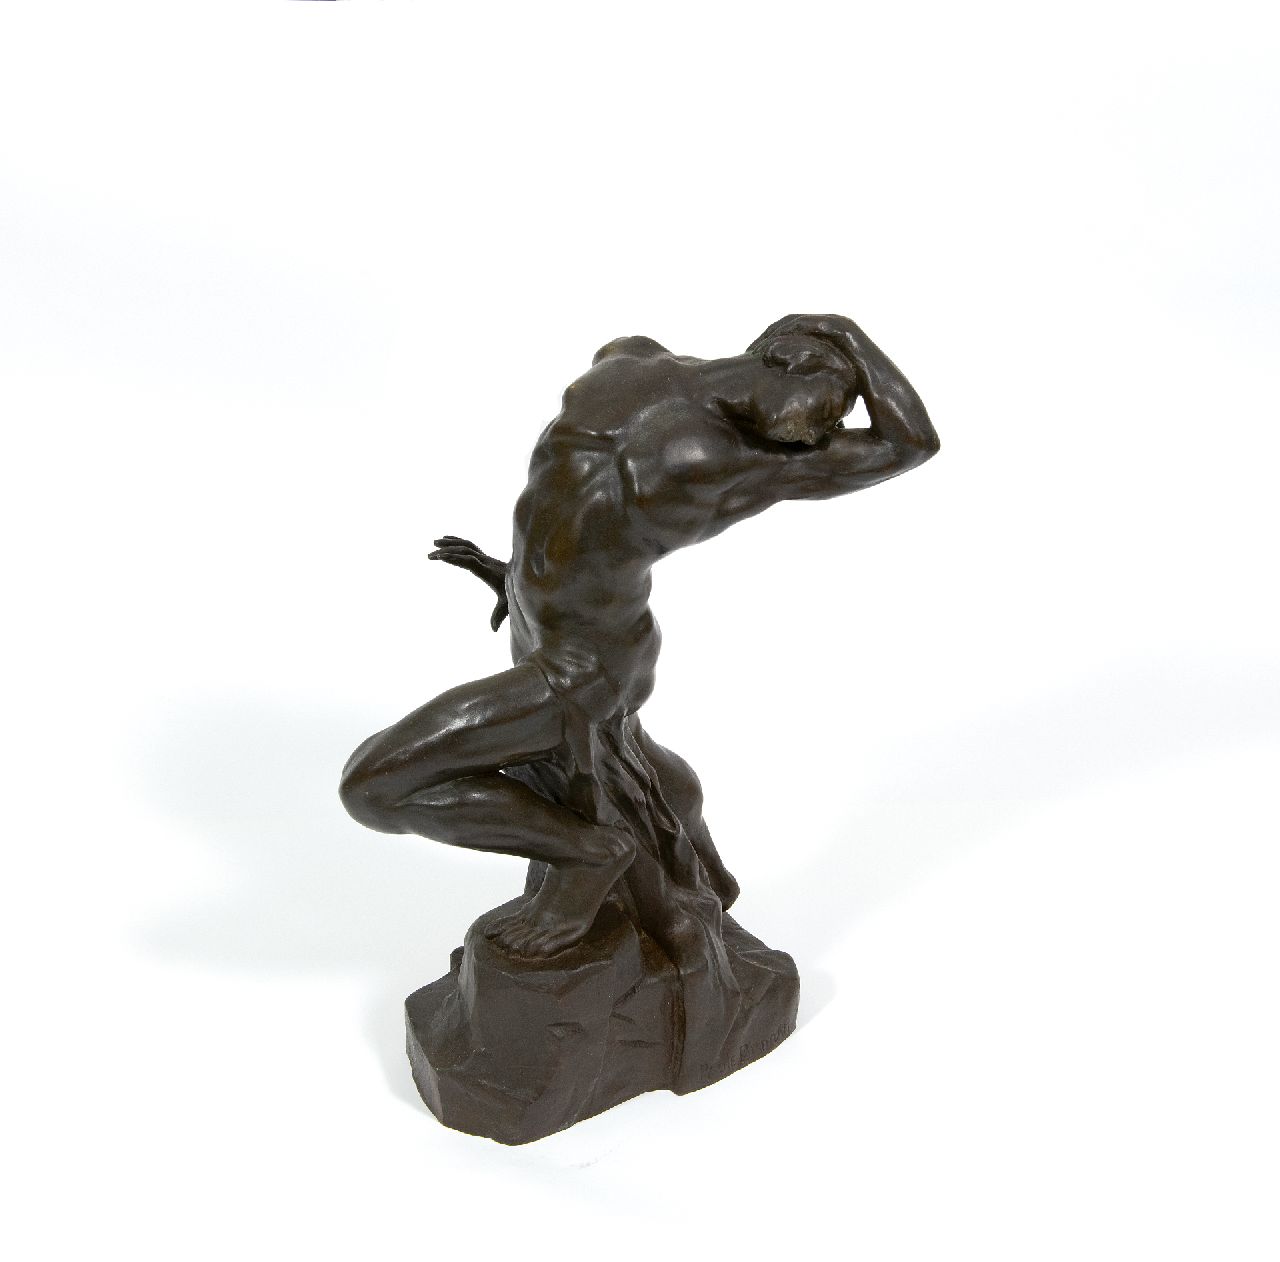 Paule Bisman | In vervoering, brons, 38,5 cm, gesigneerd op rand basis